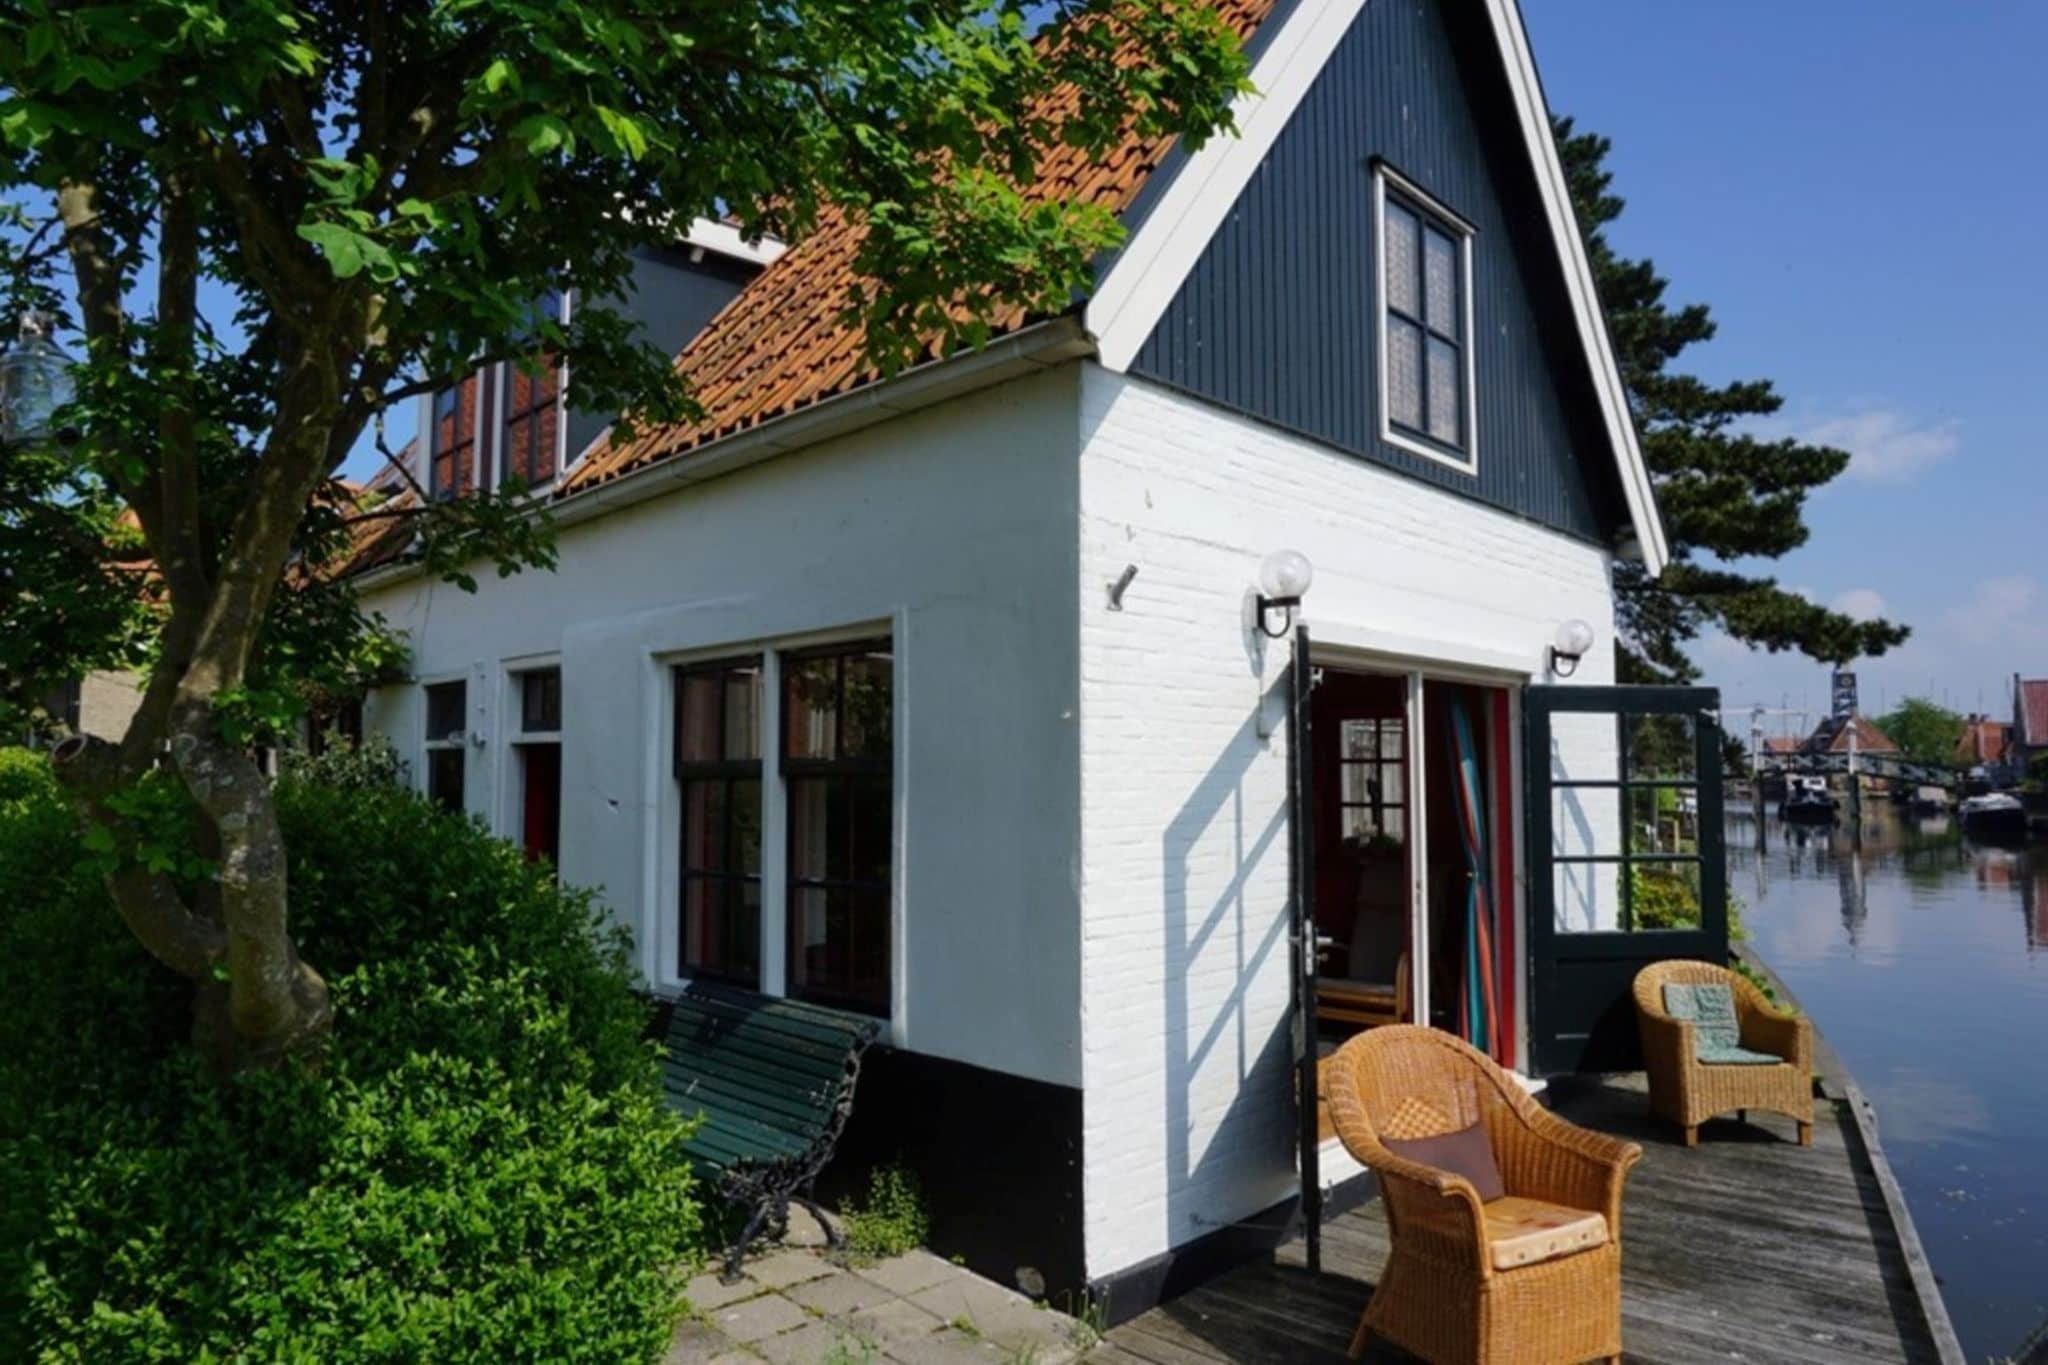 Heerlijk sfeervol vakantiehuis in Hindeloopen, direct aan de 11 stedentocht route